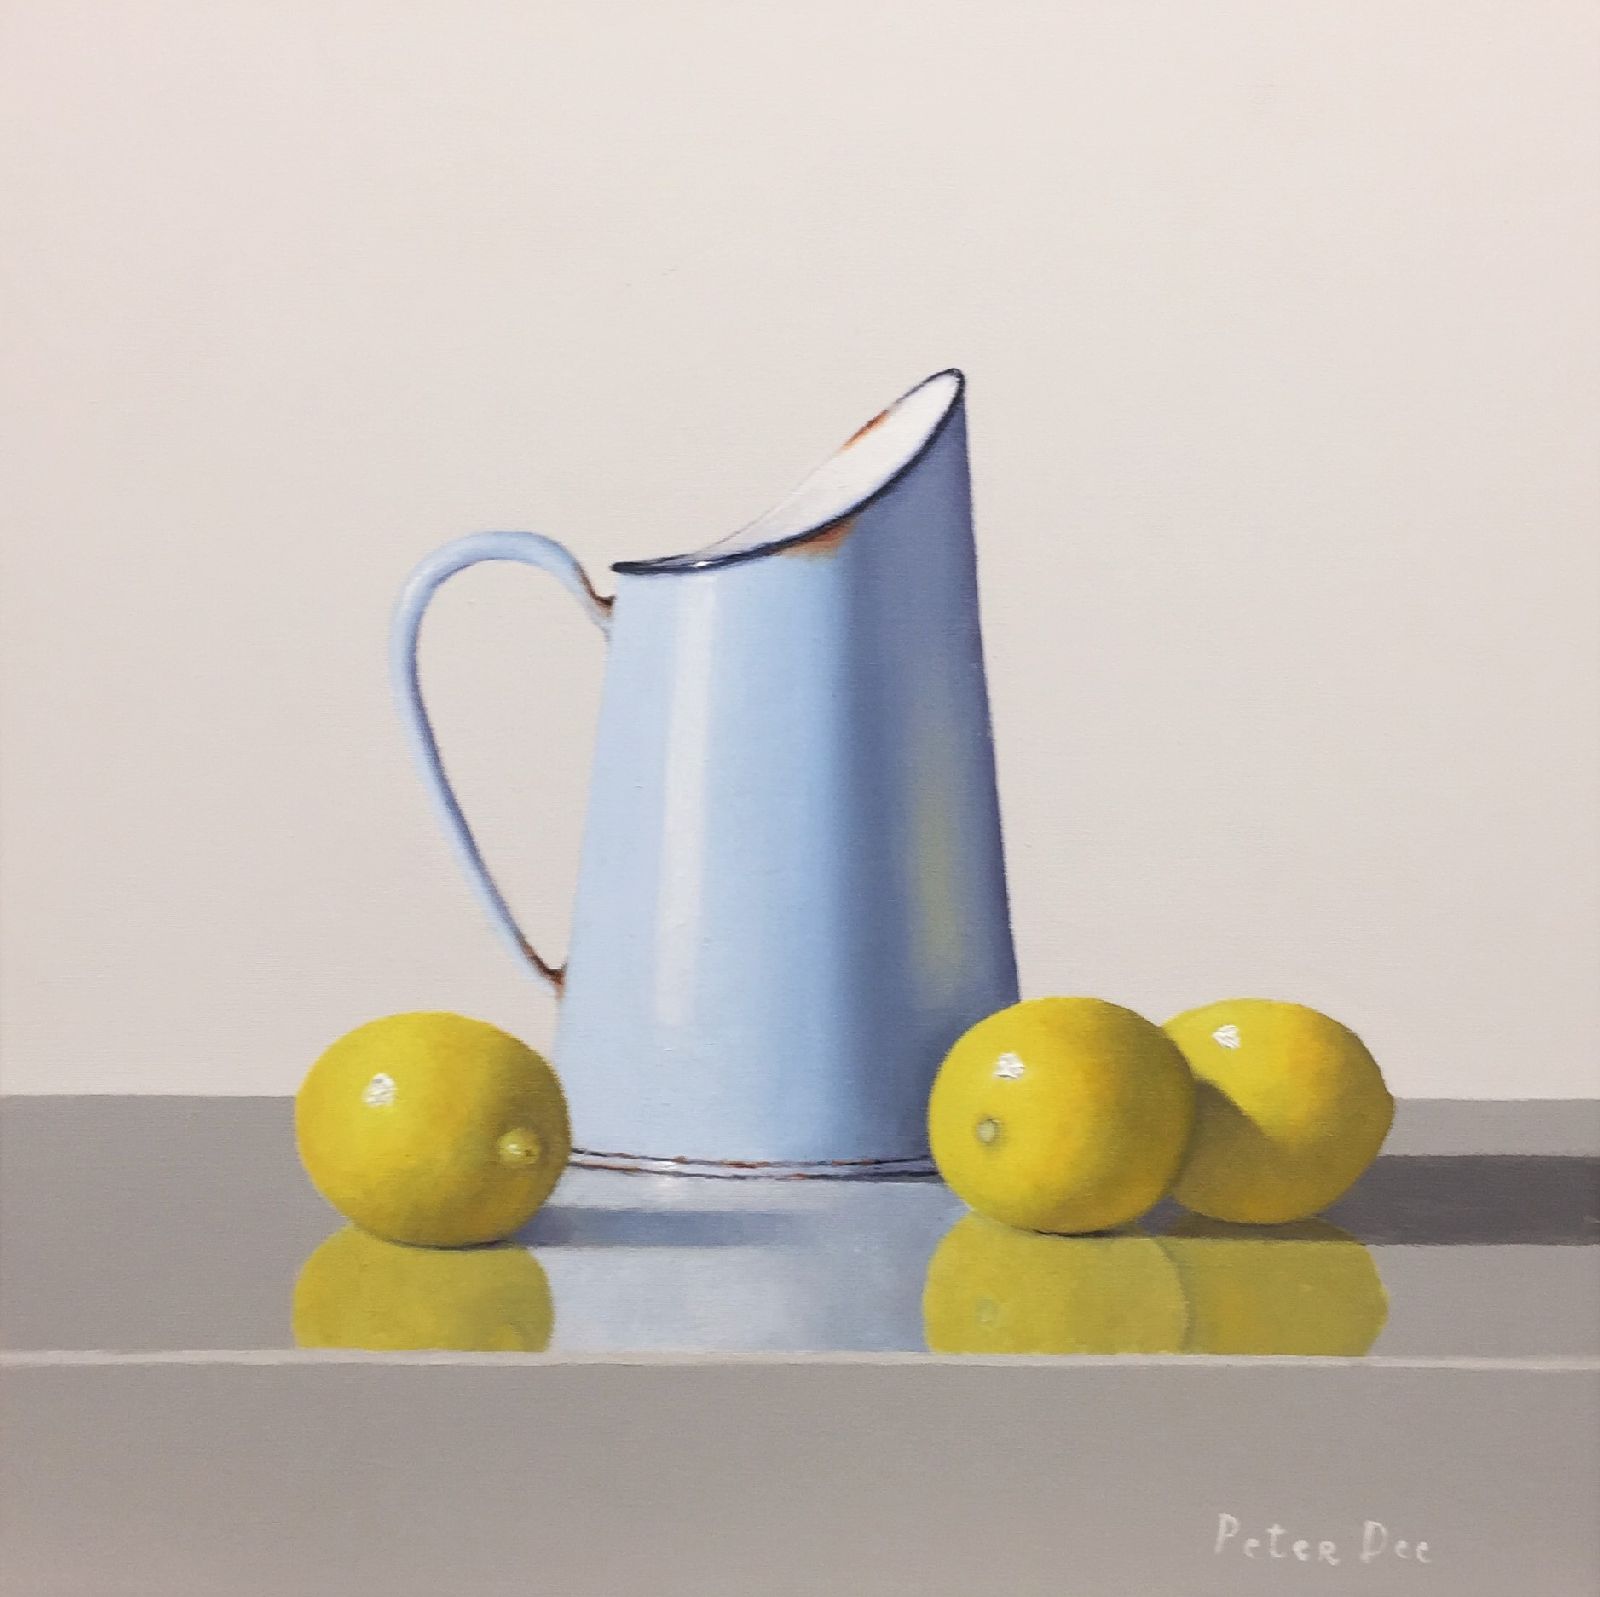 Vintage Blue Enamel with Lemons by Peter Dee